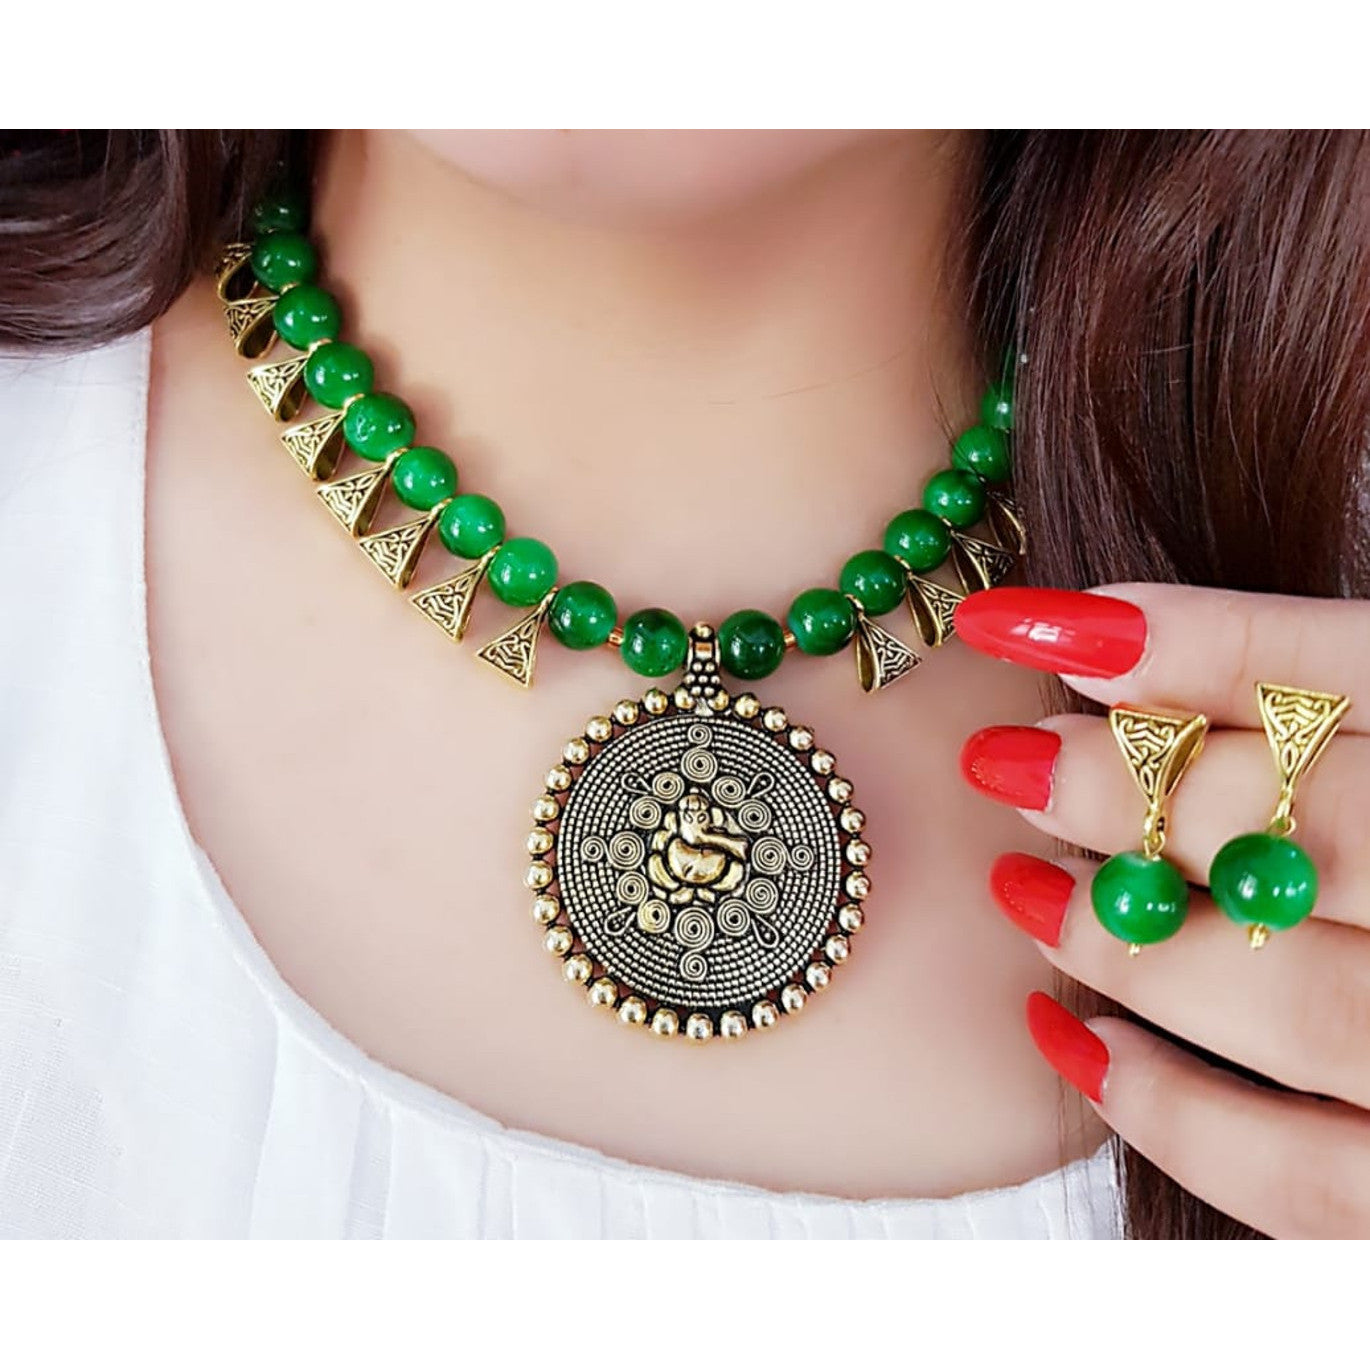 Ganesh Ji Necklace with Earrings for Women | Buy Jewellery set Online from Mekkna